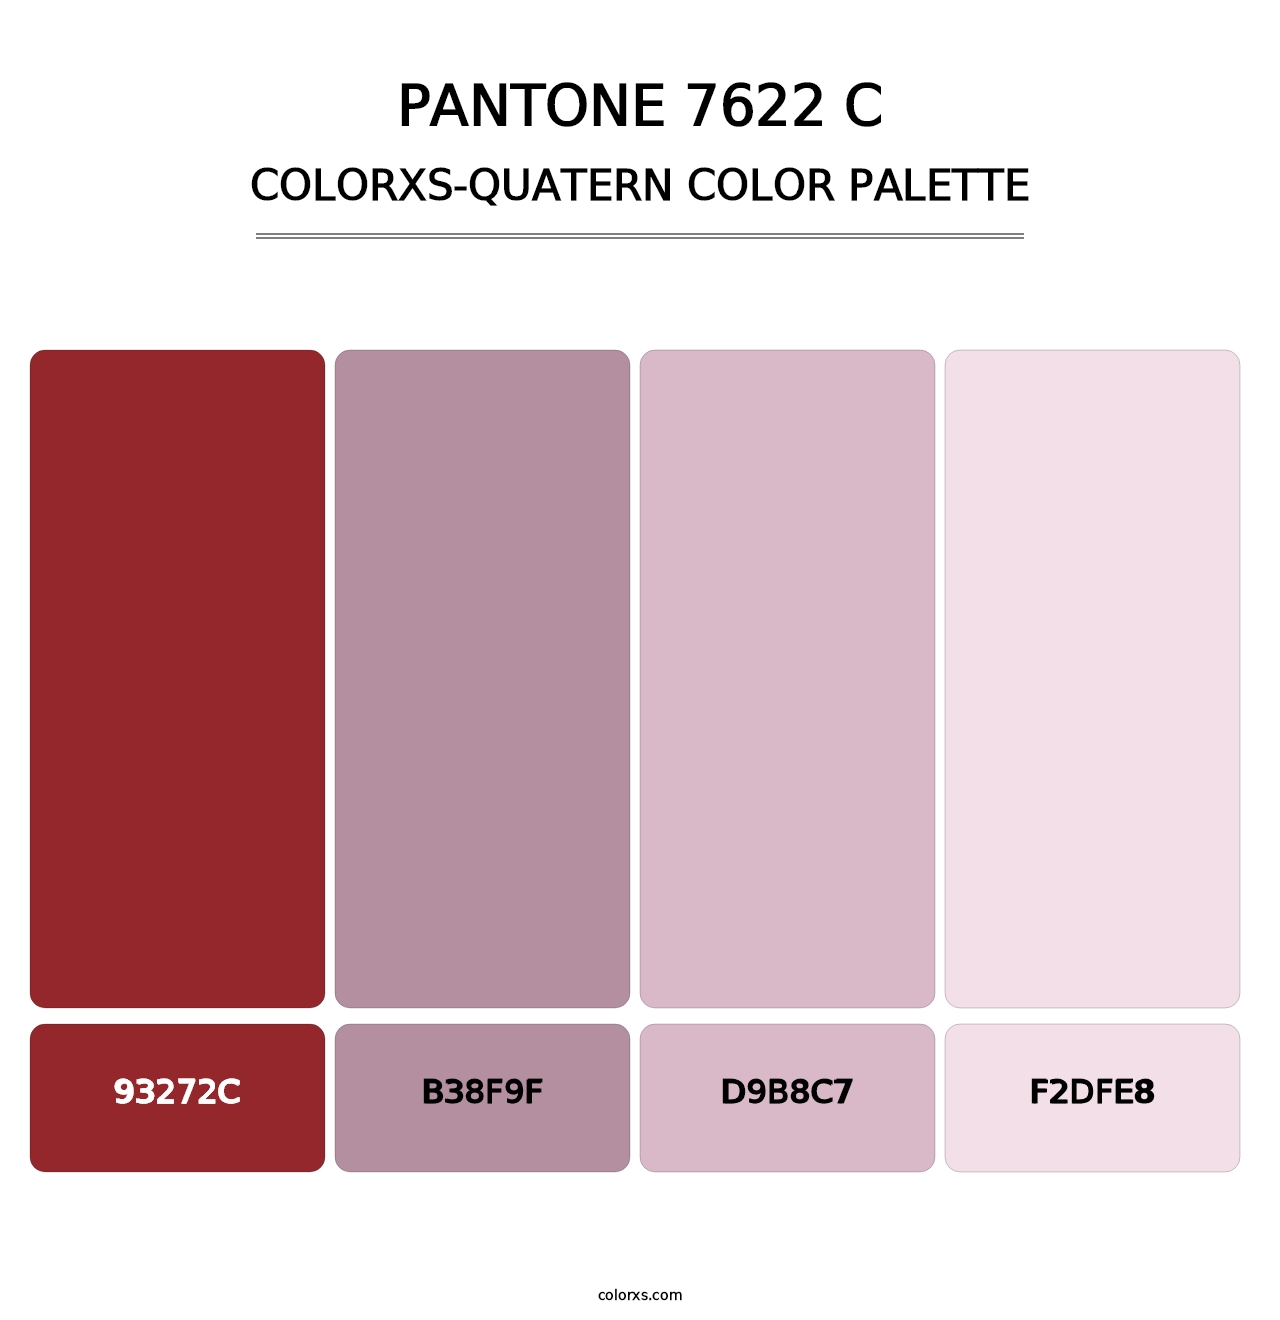 PANTONE 7622 C - Colorxs Quatern Palette